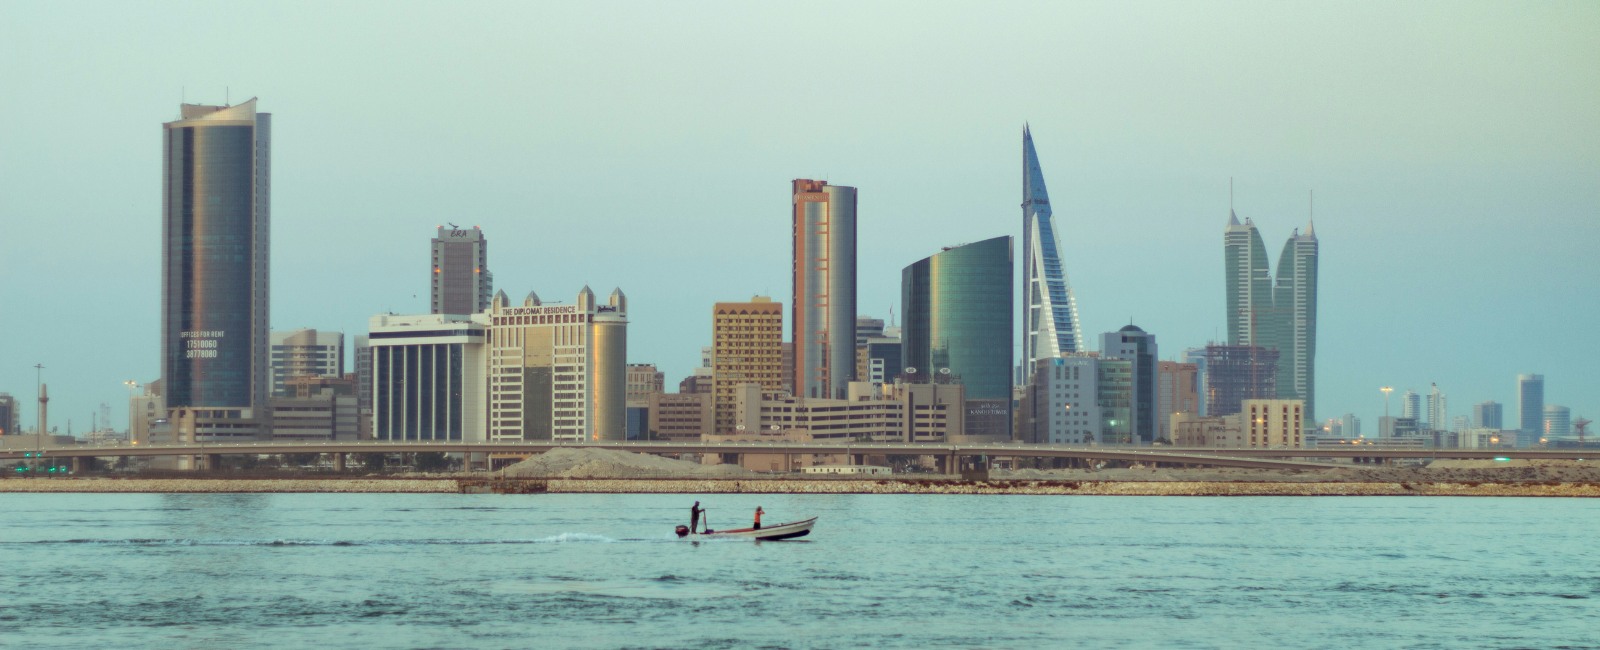 Skyline of Bahrain